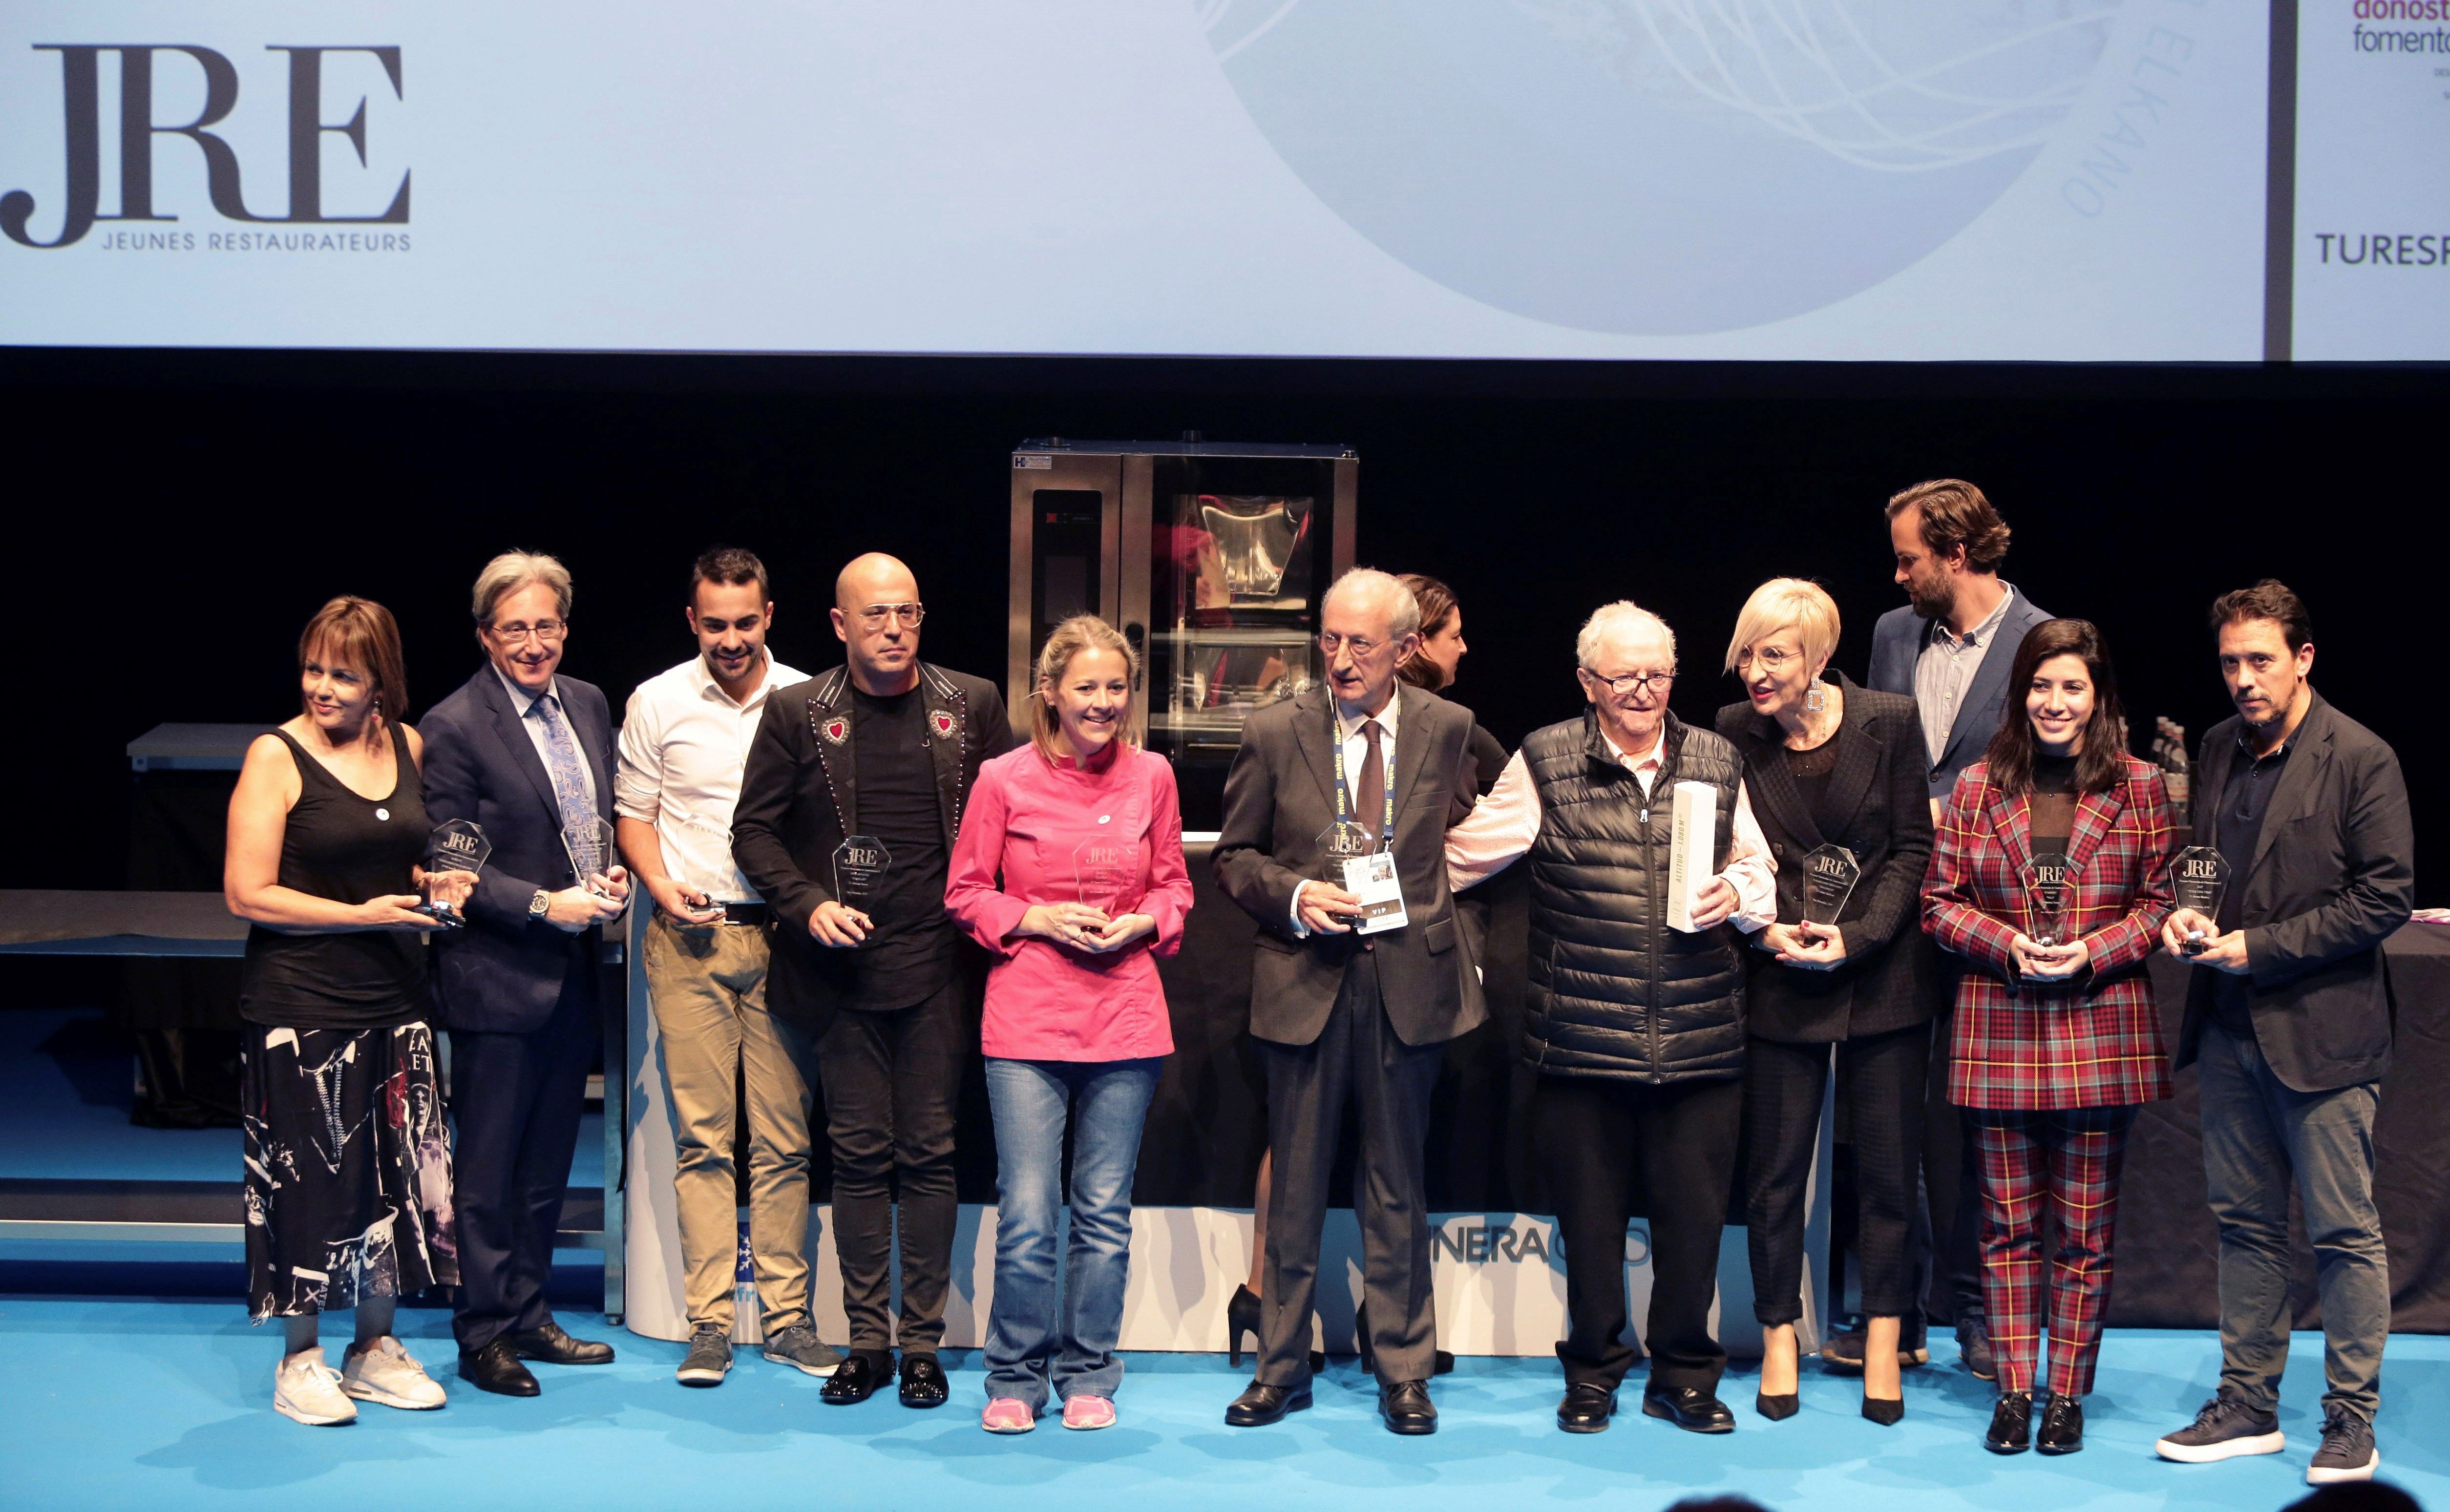 José Monje del restaurante Via Veneto recibe el Premio Nacional de Gastronomía de la JRE